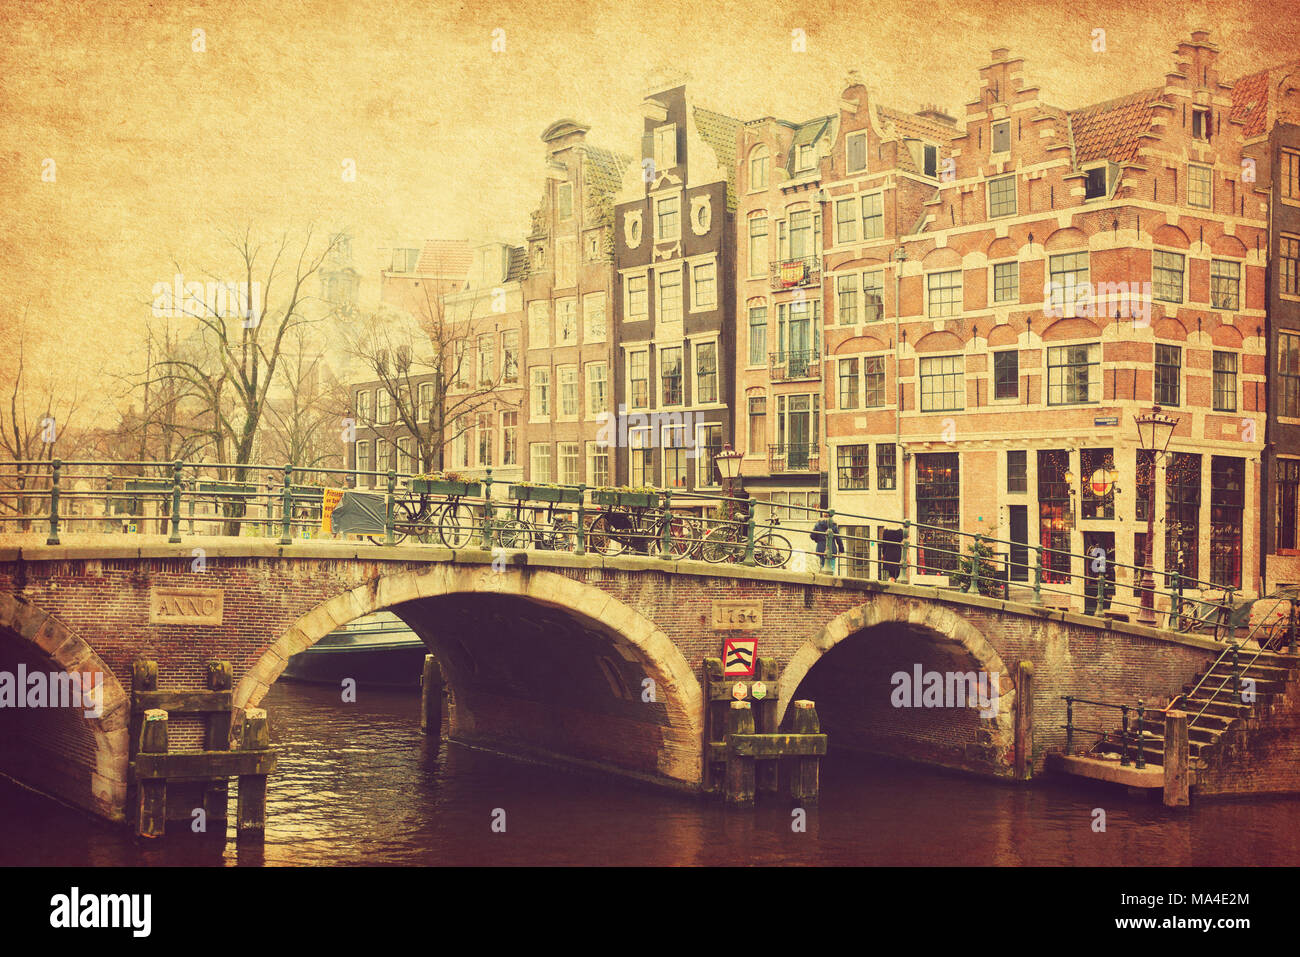 Retro Image der Prinsengracht Kanal, Amsterdam, Niederlande. Hinzugefügt Papier Textur. Getonten Bild Stockfoto